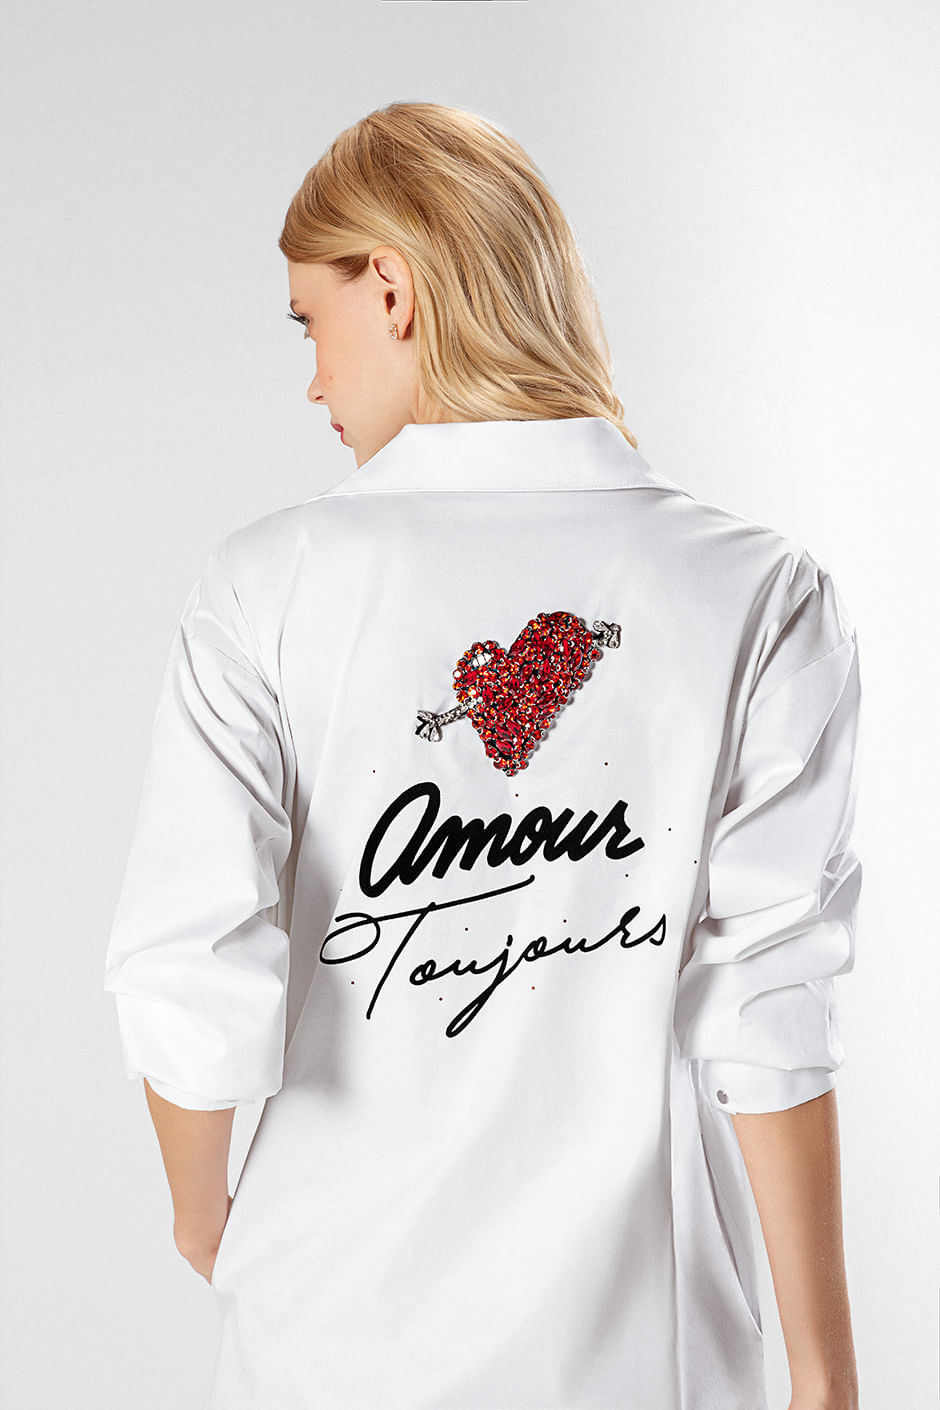 Foto de modelo de espalda usando vestido Studio F color blanco con estampado de corazón rojo y mensaje 